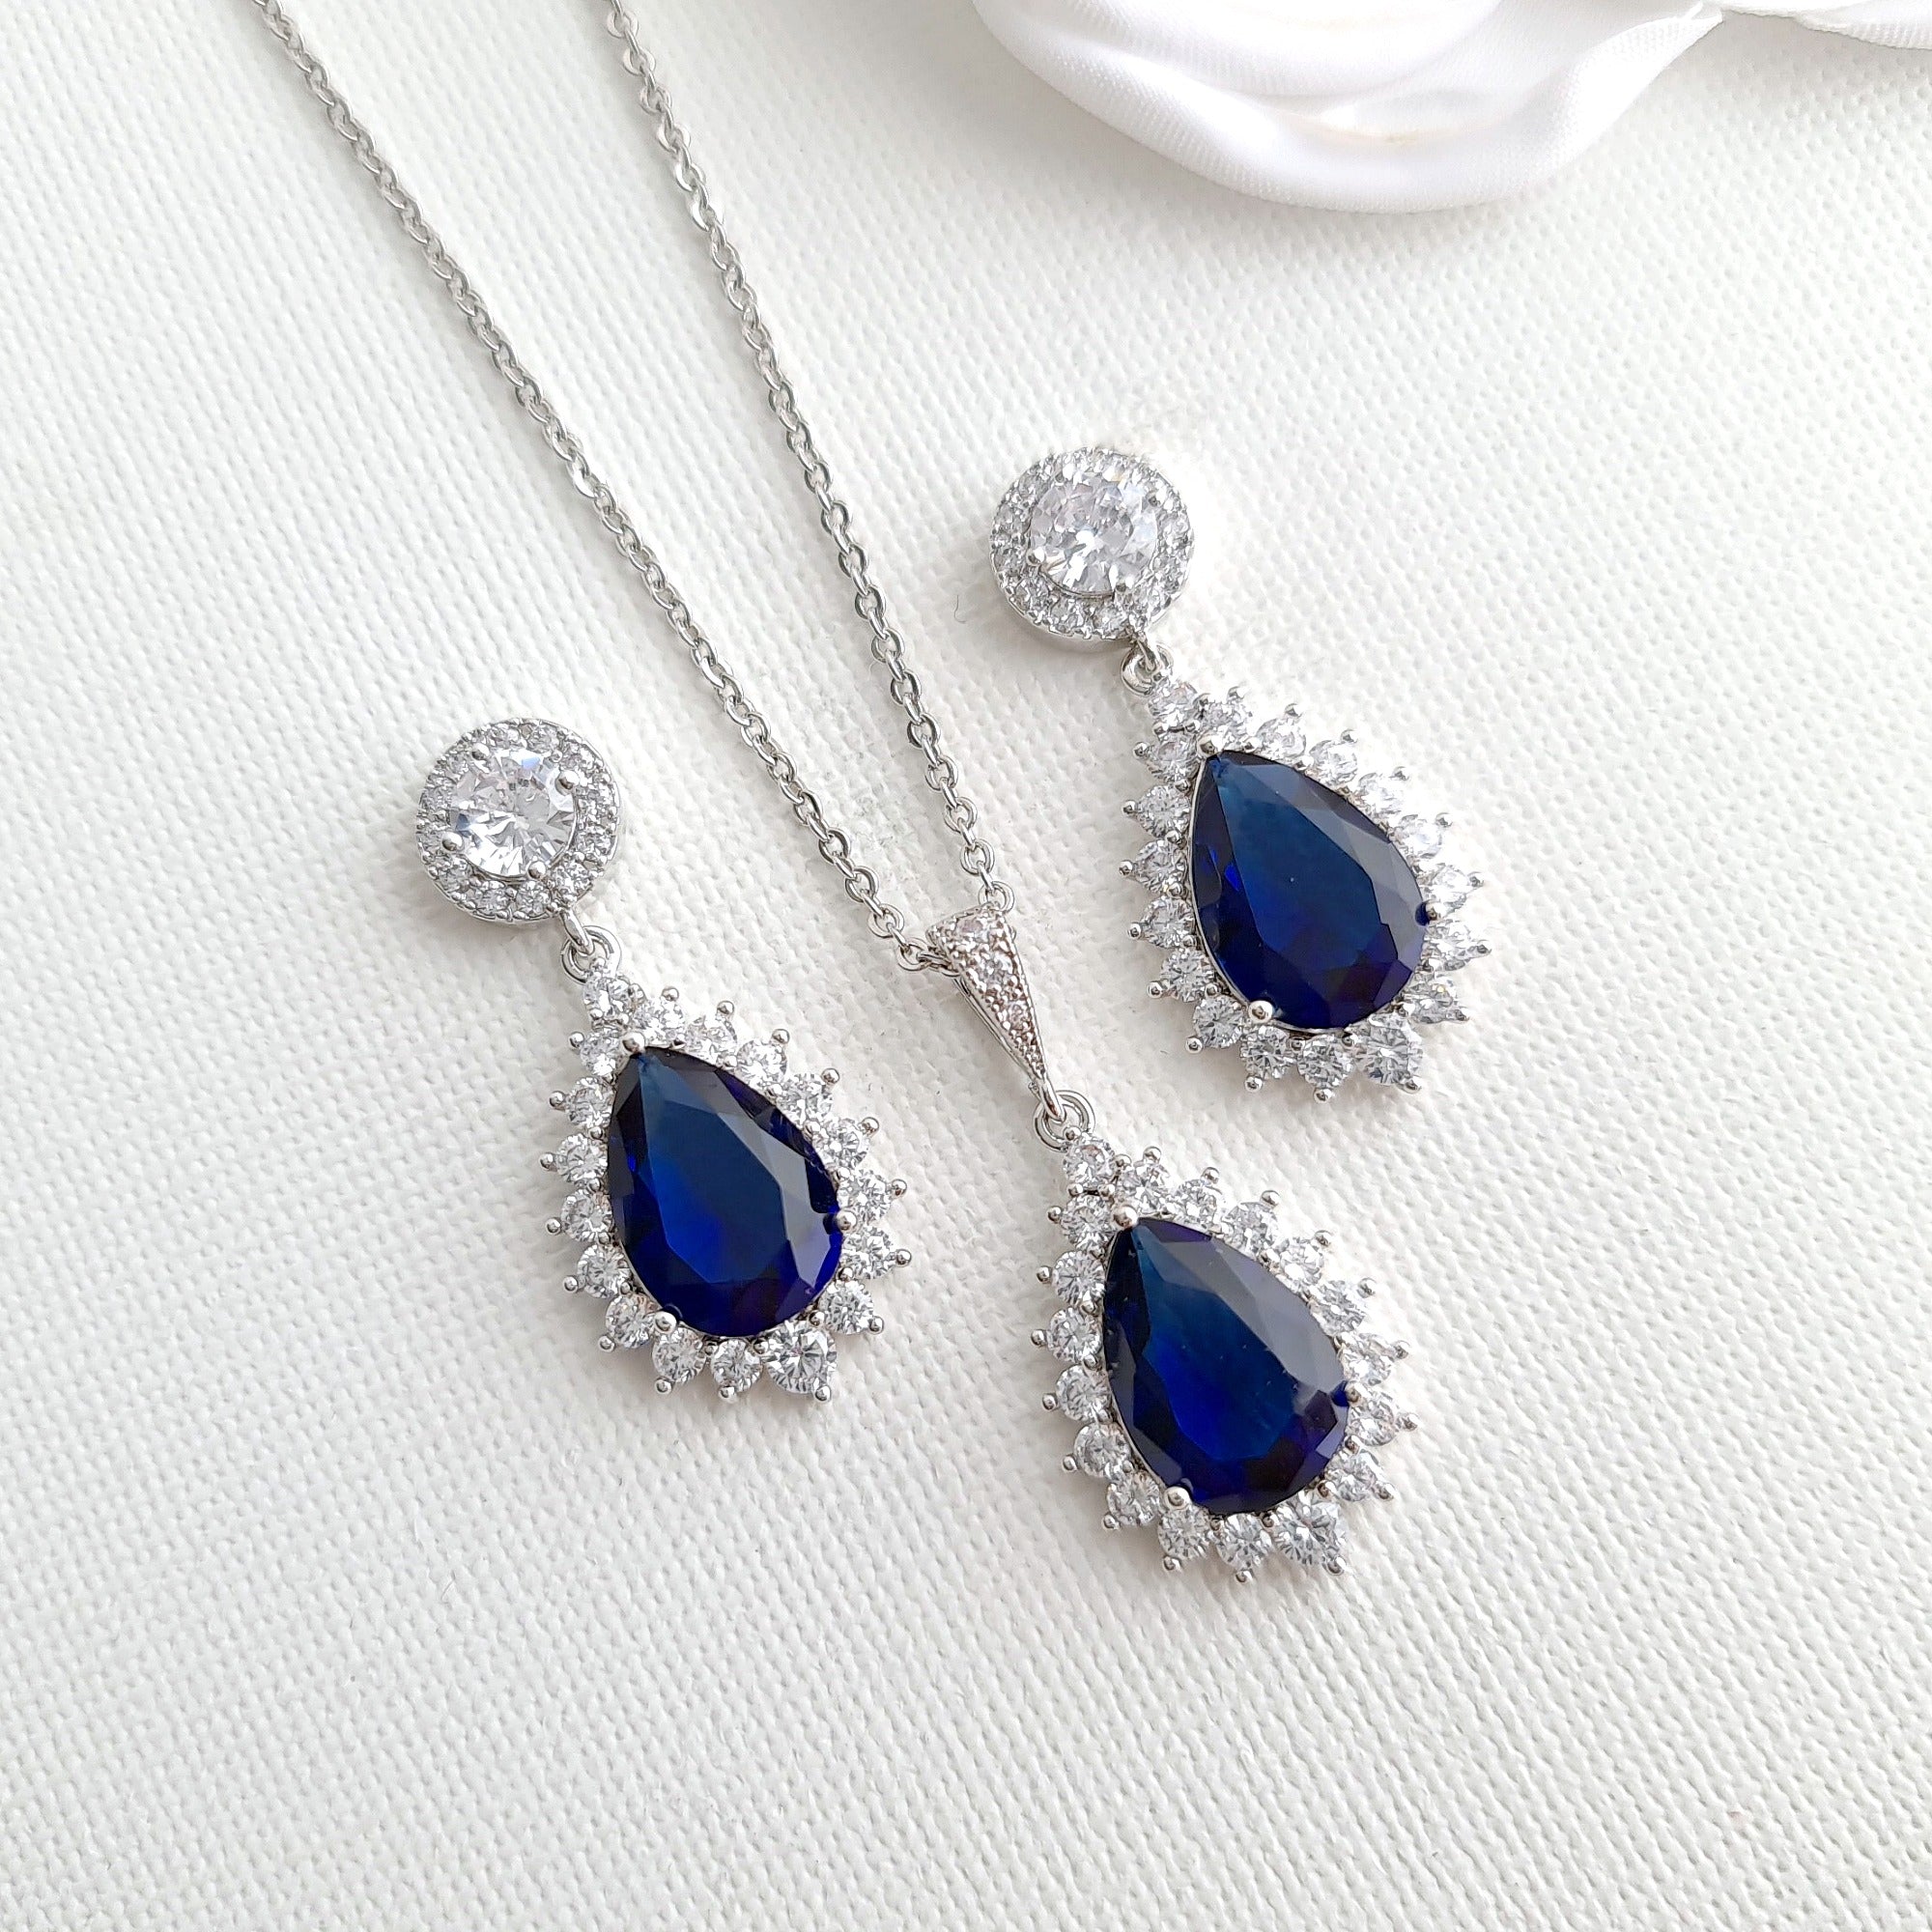 Earrings - Silver with Dark Blue Jewels - The Bear Den Gallery